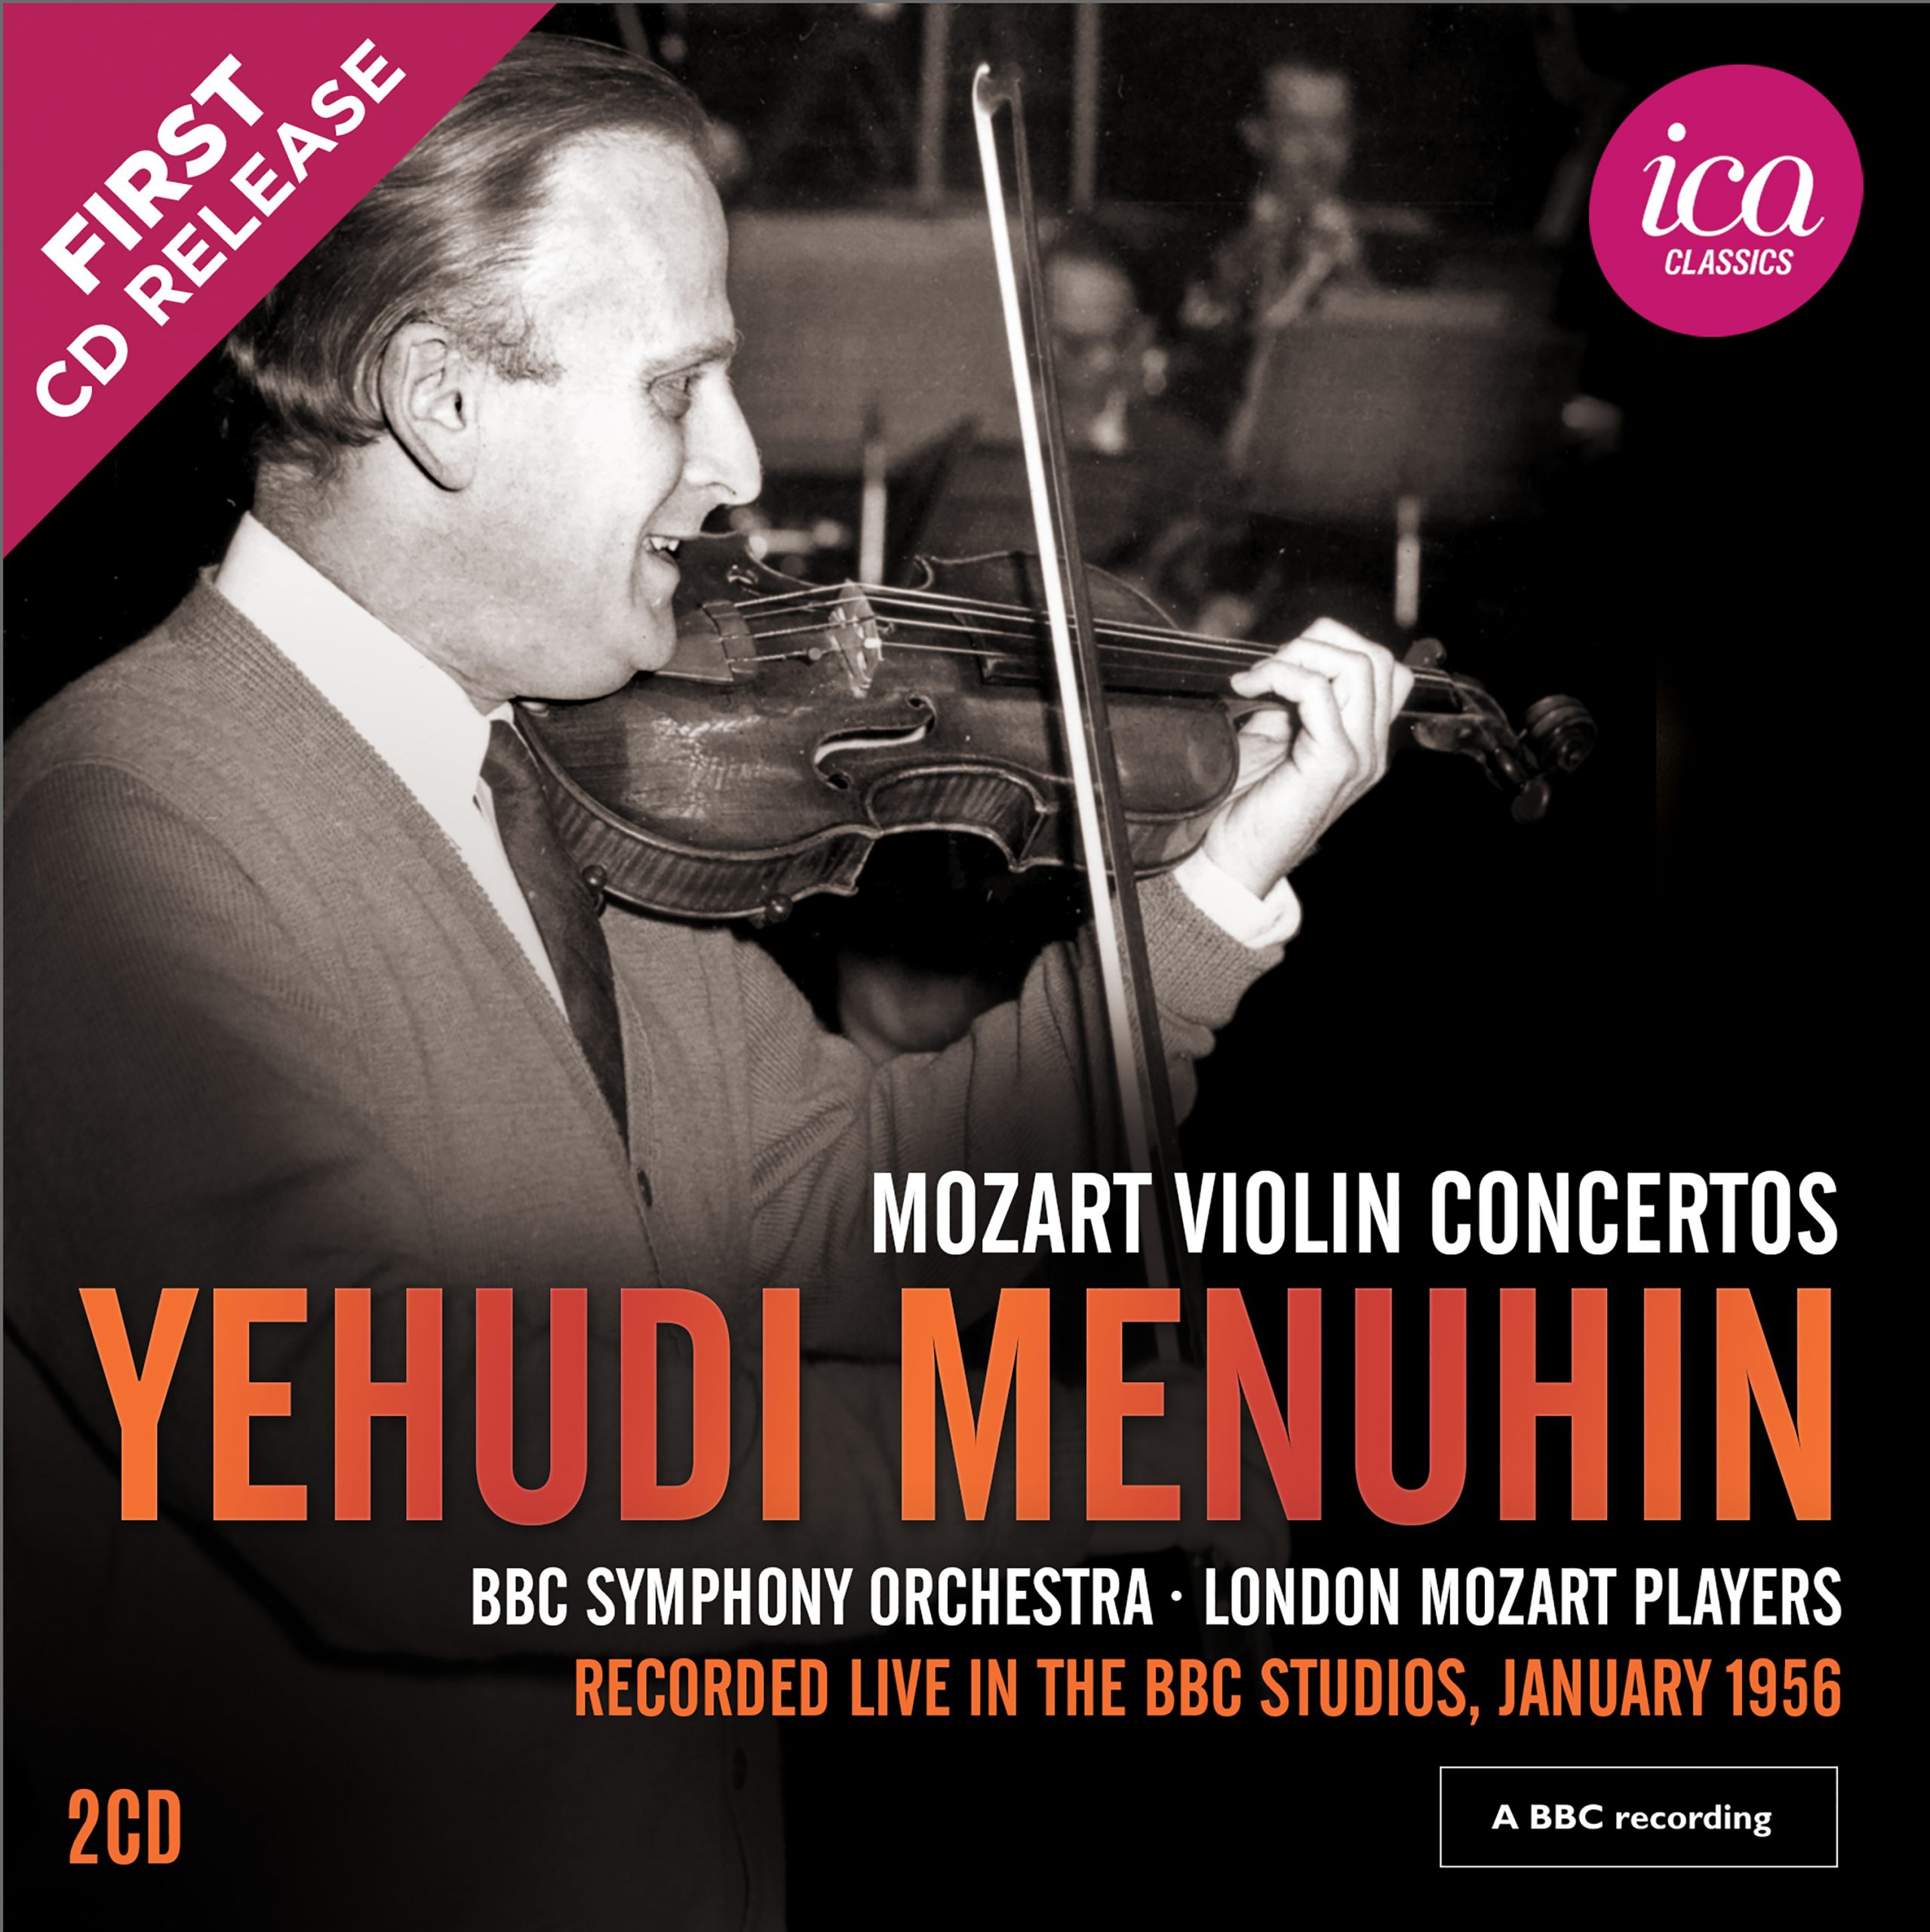 Yehudi Menuhin: Mozart Violin Concertos (Richard Itter Collection) ICA